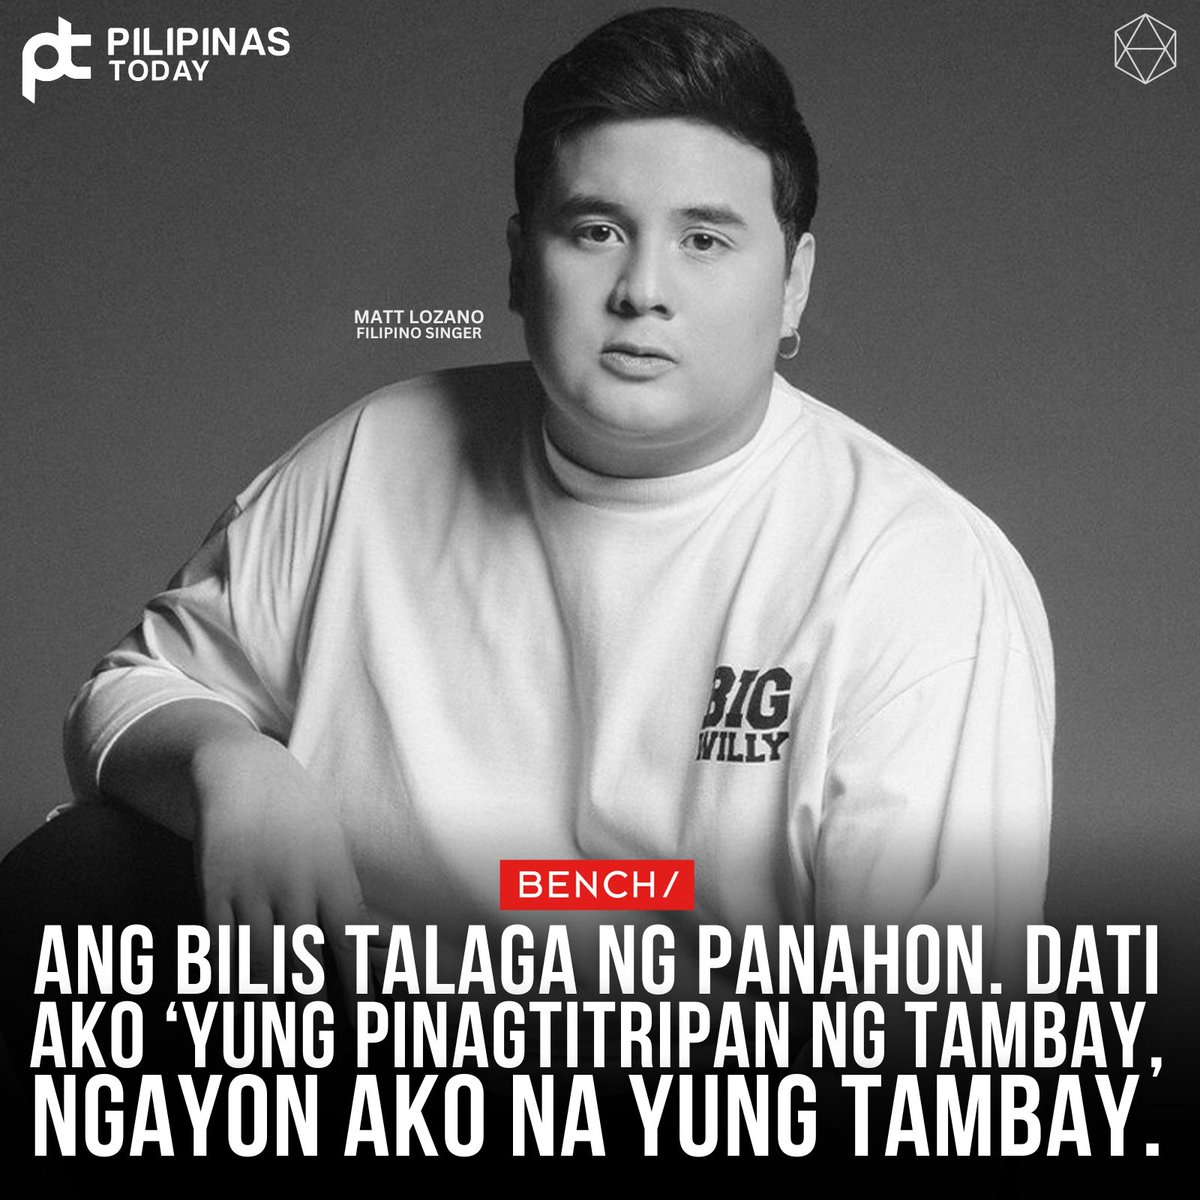 Ang bilis talaga ng panahon. Dati ako ‘yung pinagtitripan ng Tambay, ngayon ako na yung tambay.

#PilipinasToday
#MattLozano
#Bench